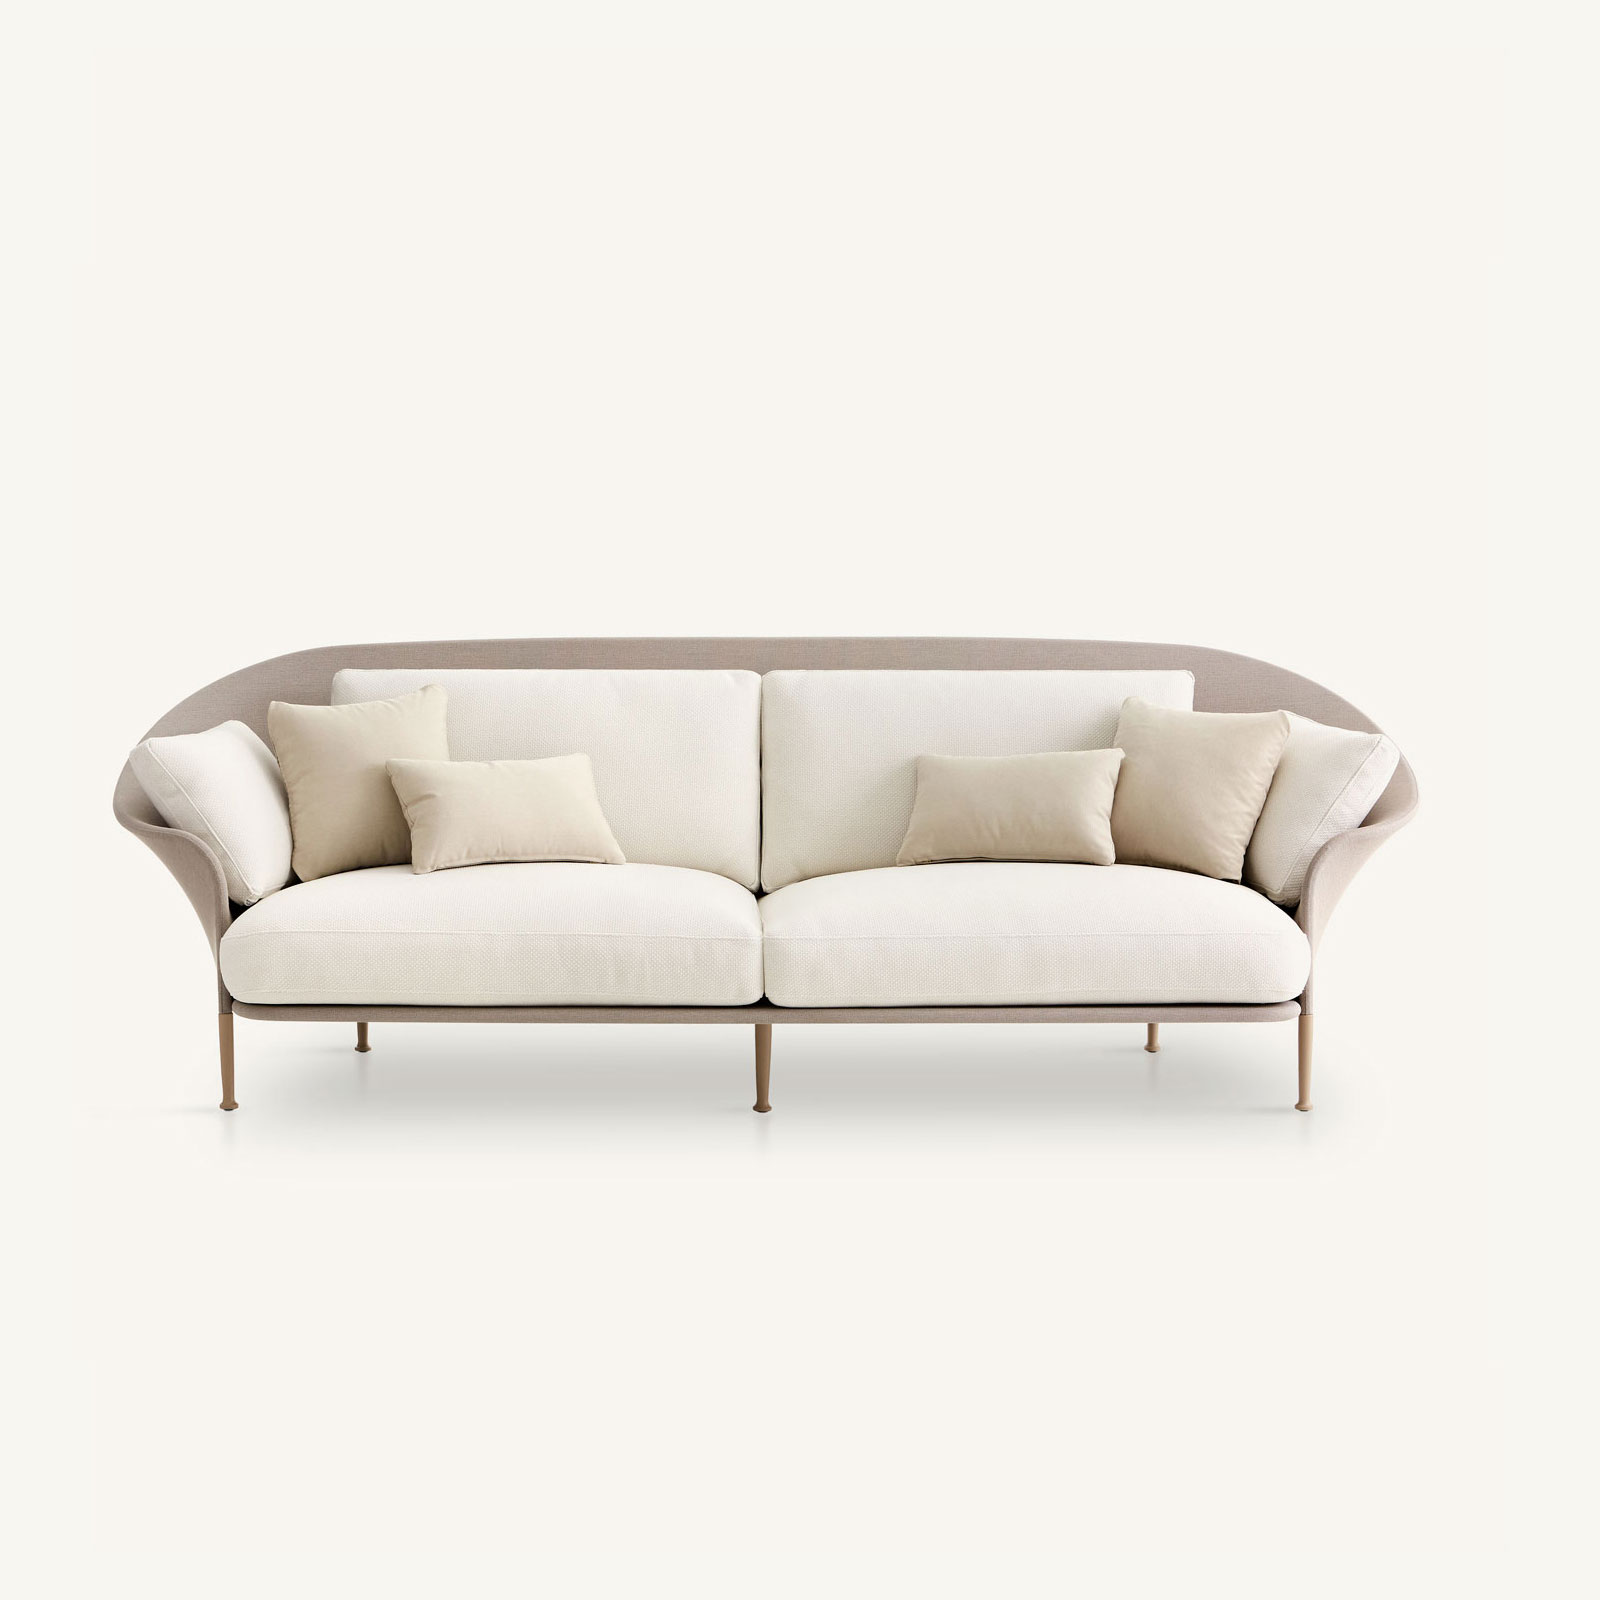 muebles de exterior - sofás - sofá xl liz